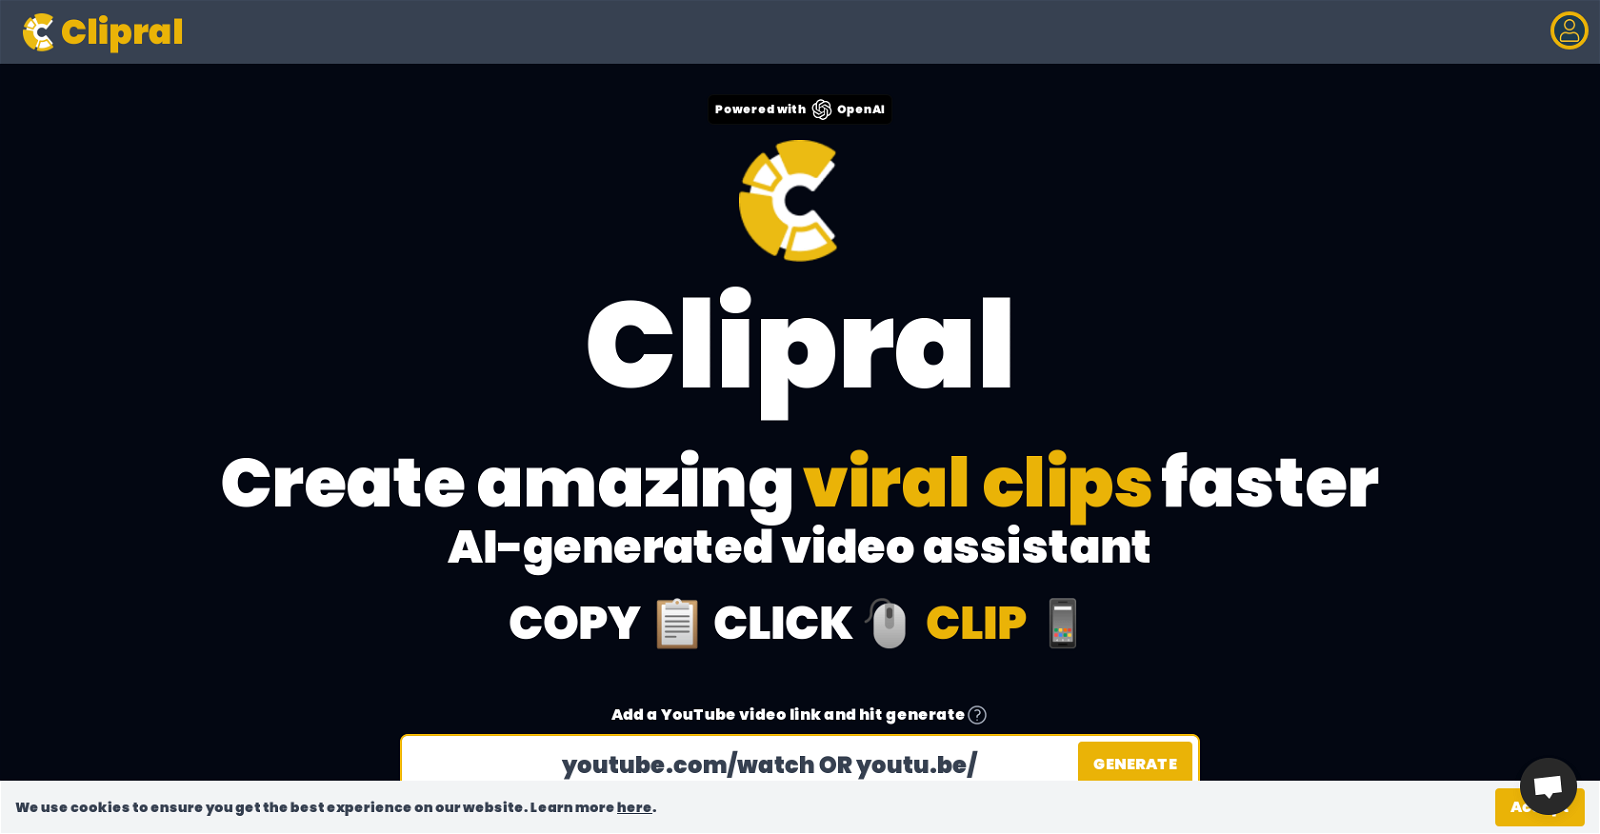 Clipral website